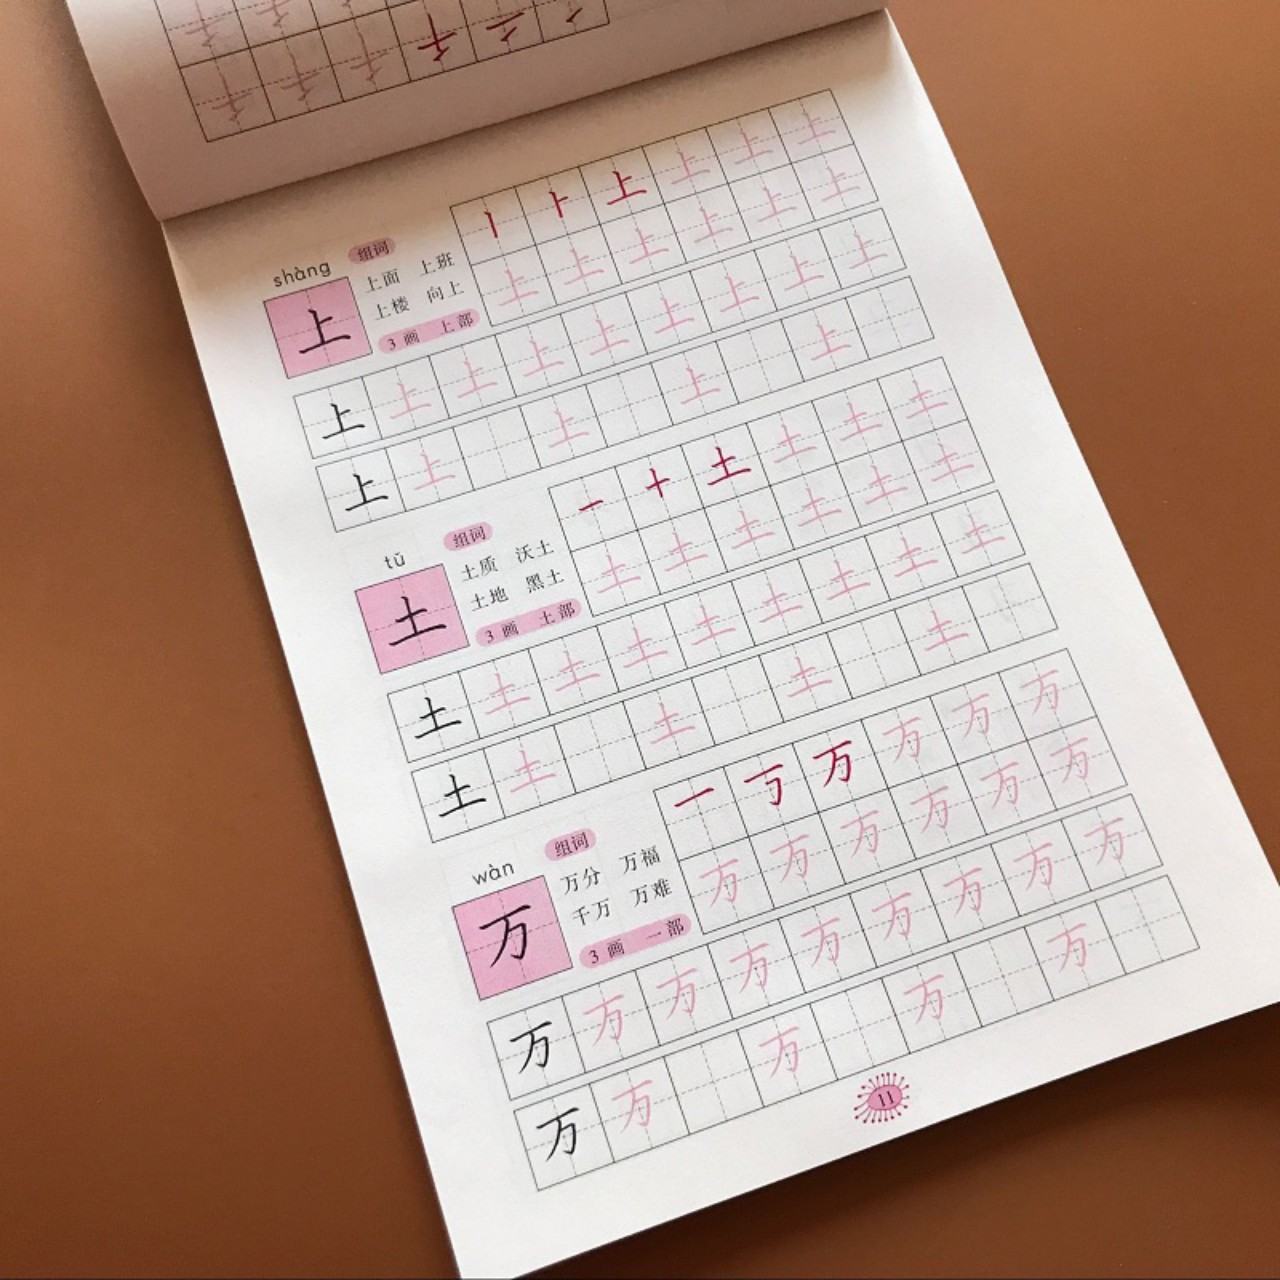 Vở luyện viết Tiếng Trung 300 chữ, tập viết chữ Hán cơ bản dành cho người mới bắt đầu+kèm 10 ngòi bút bay màu